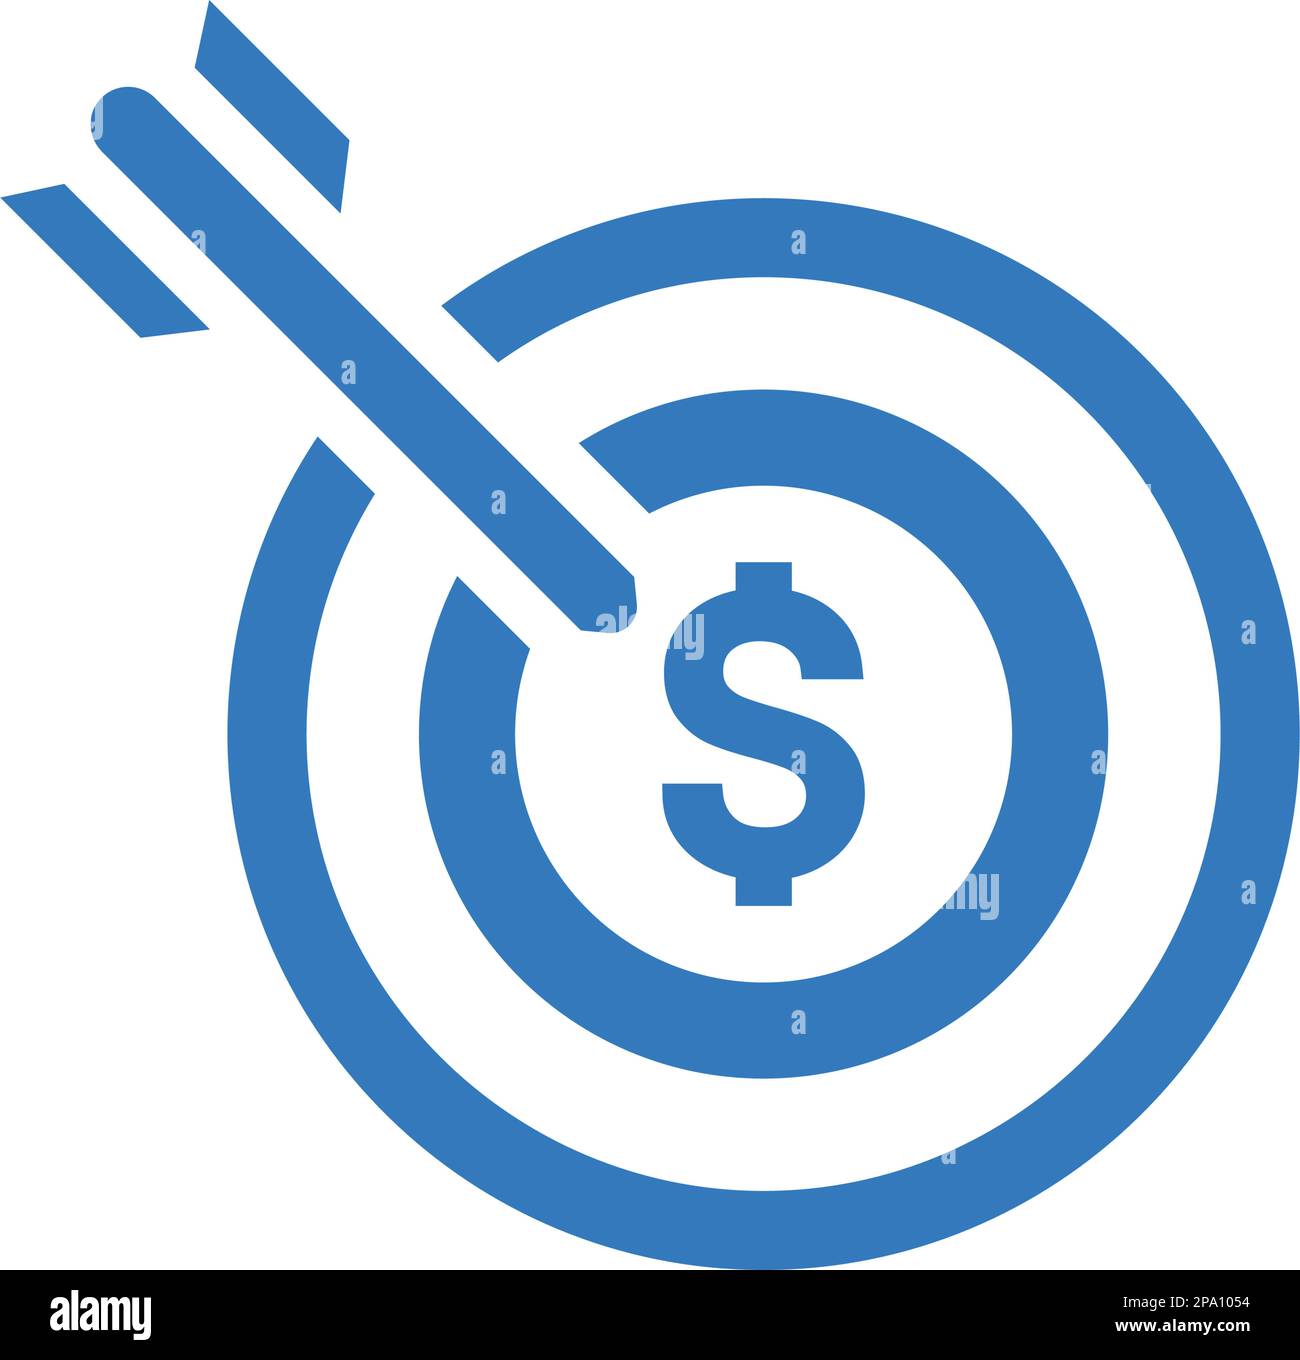 Profit, Target Money Icon ist die Verwendung bei der Gestaltung und Entwicklung von Websites, Werbung, Printmedien, Web oder jede Art von Design-Projekt. Stock Vektor